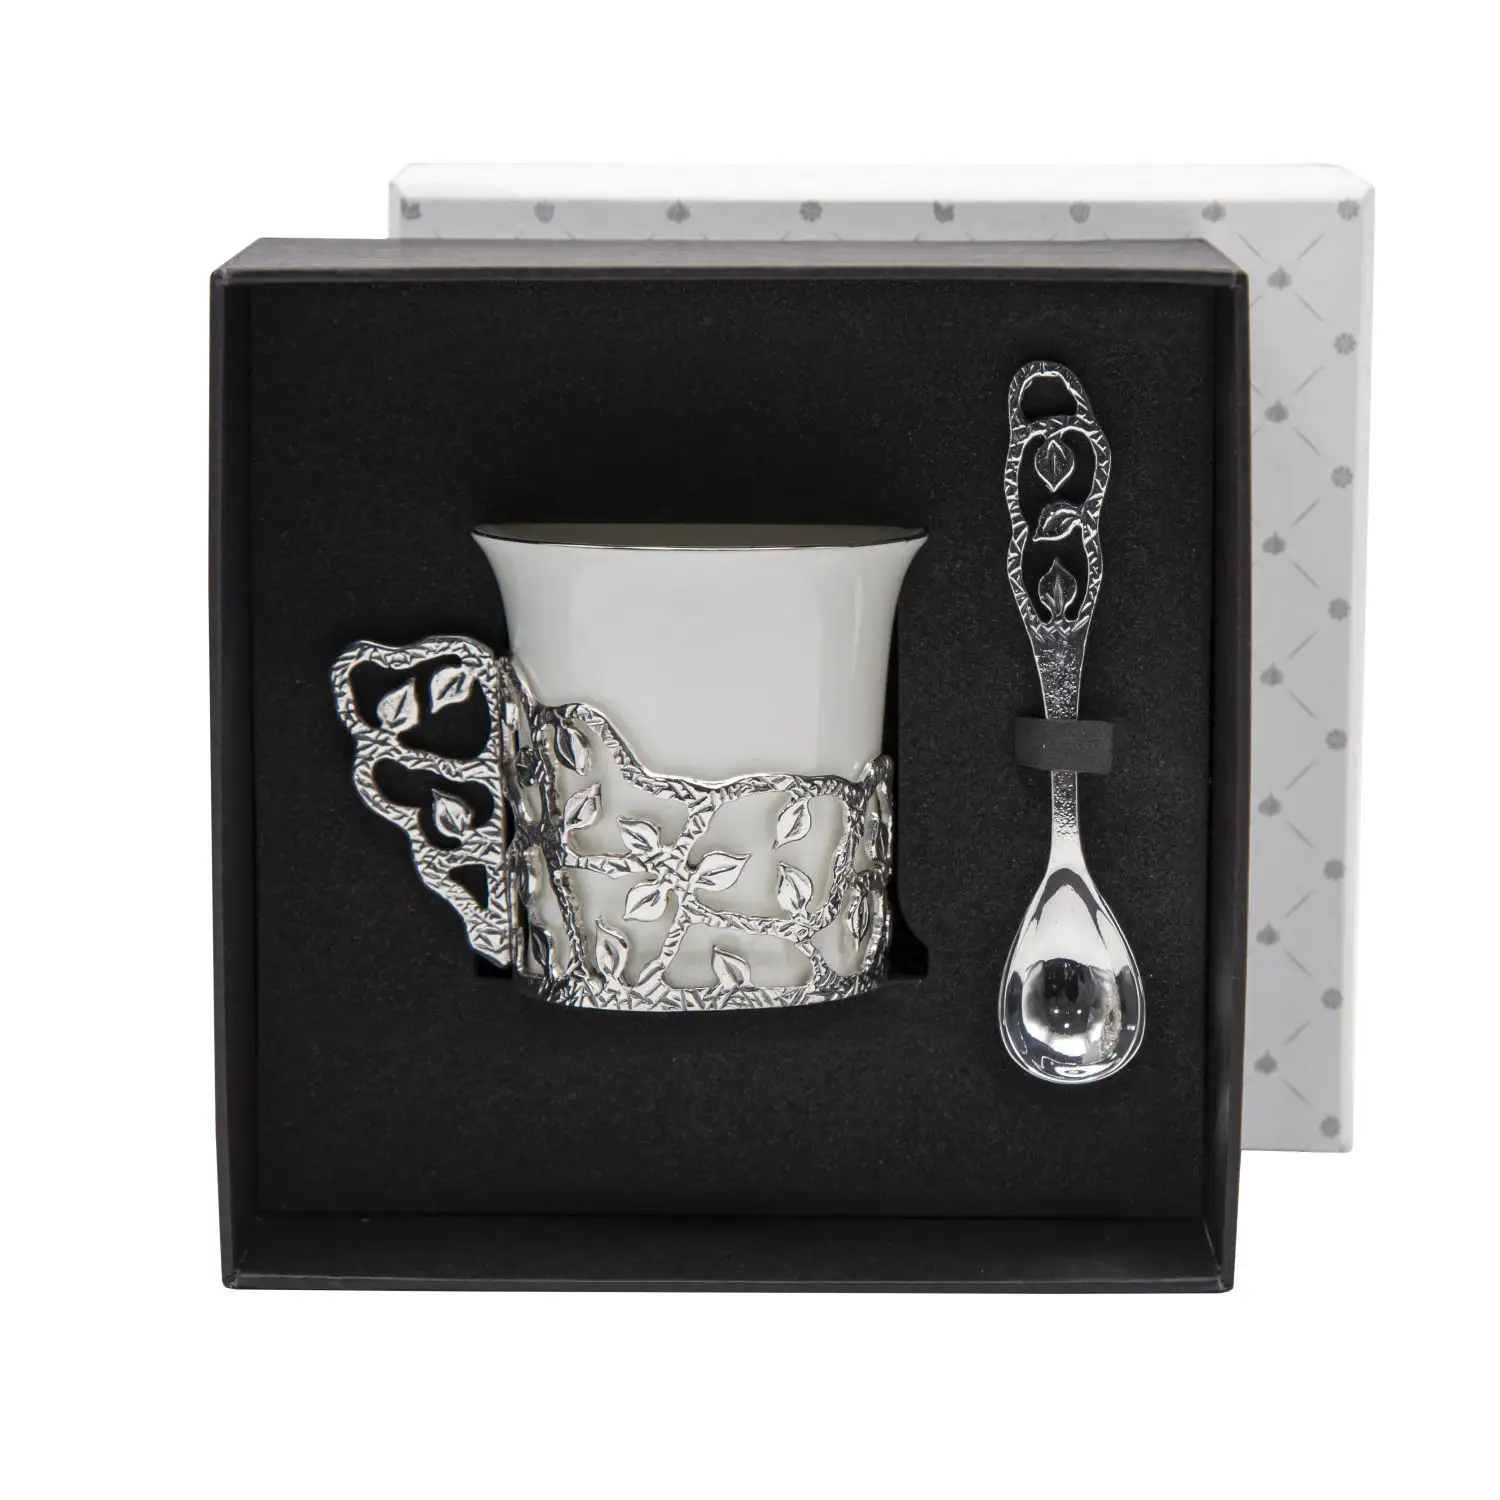 Набор чашек кофейных Листопад посеребренный с чернением 2 предмета с ложками набор чашек акку с крышками 3 предмета